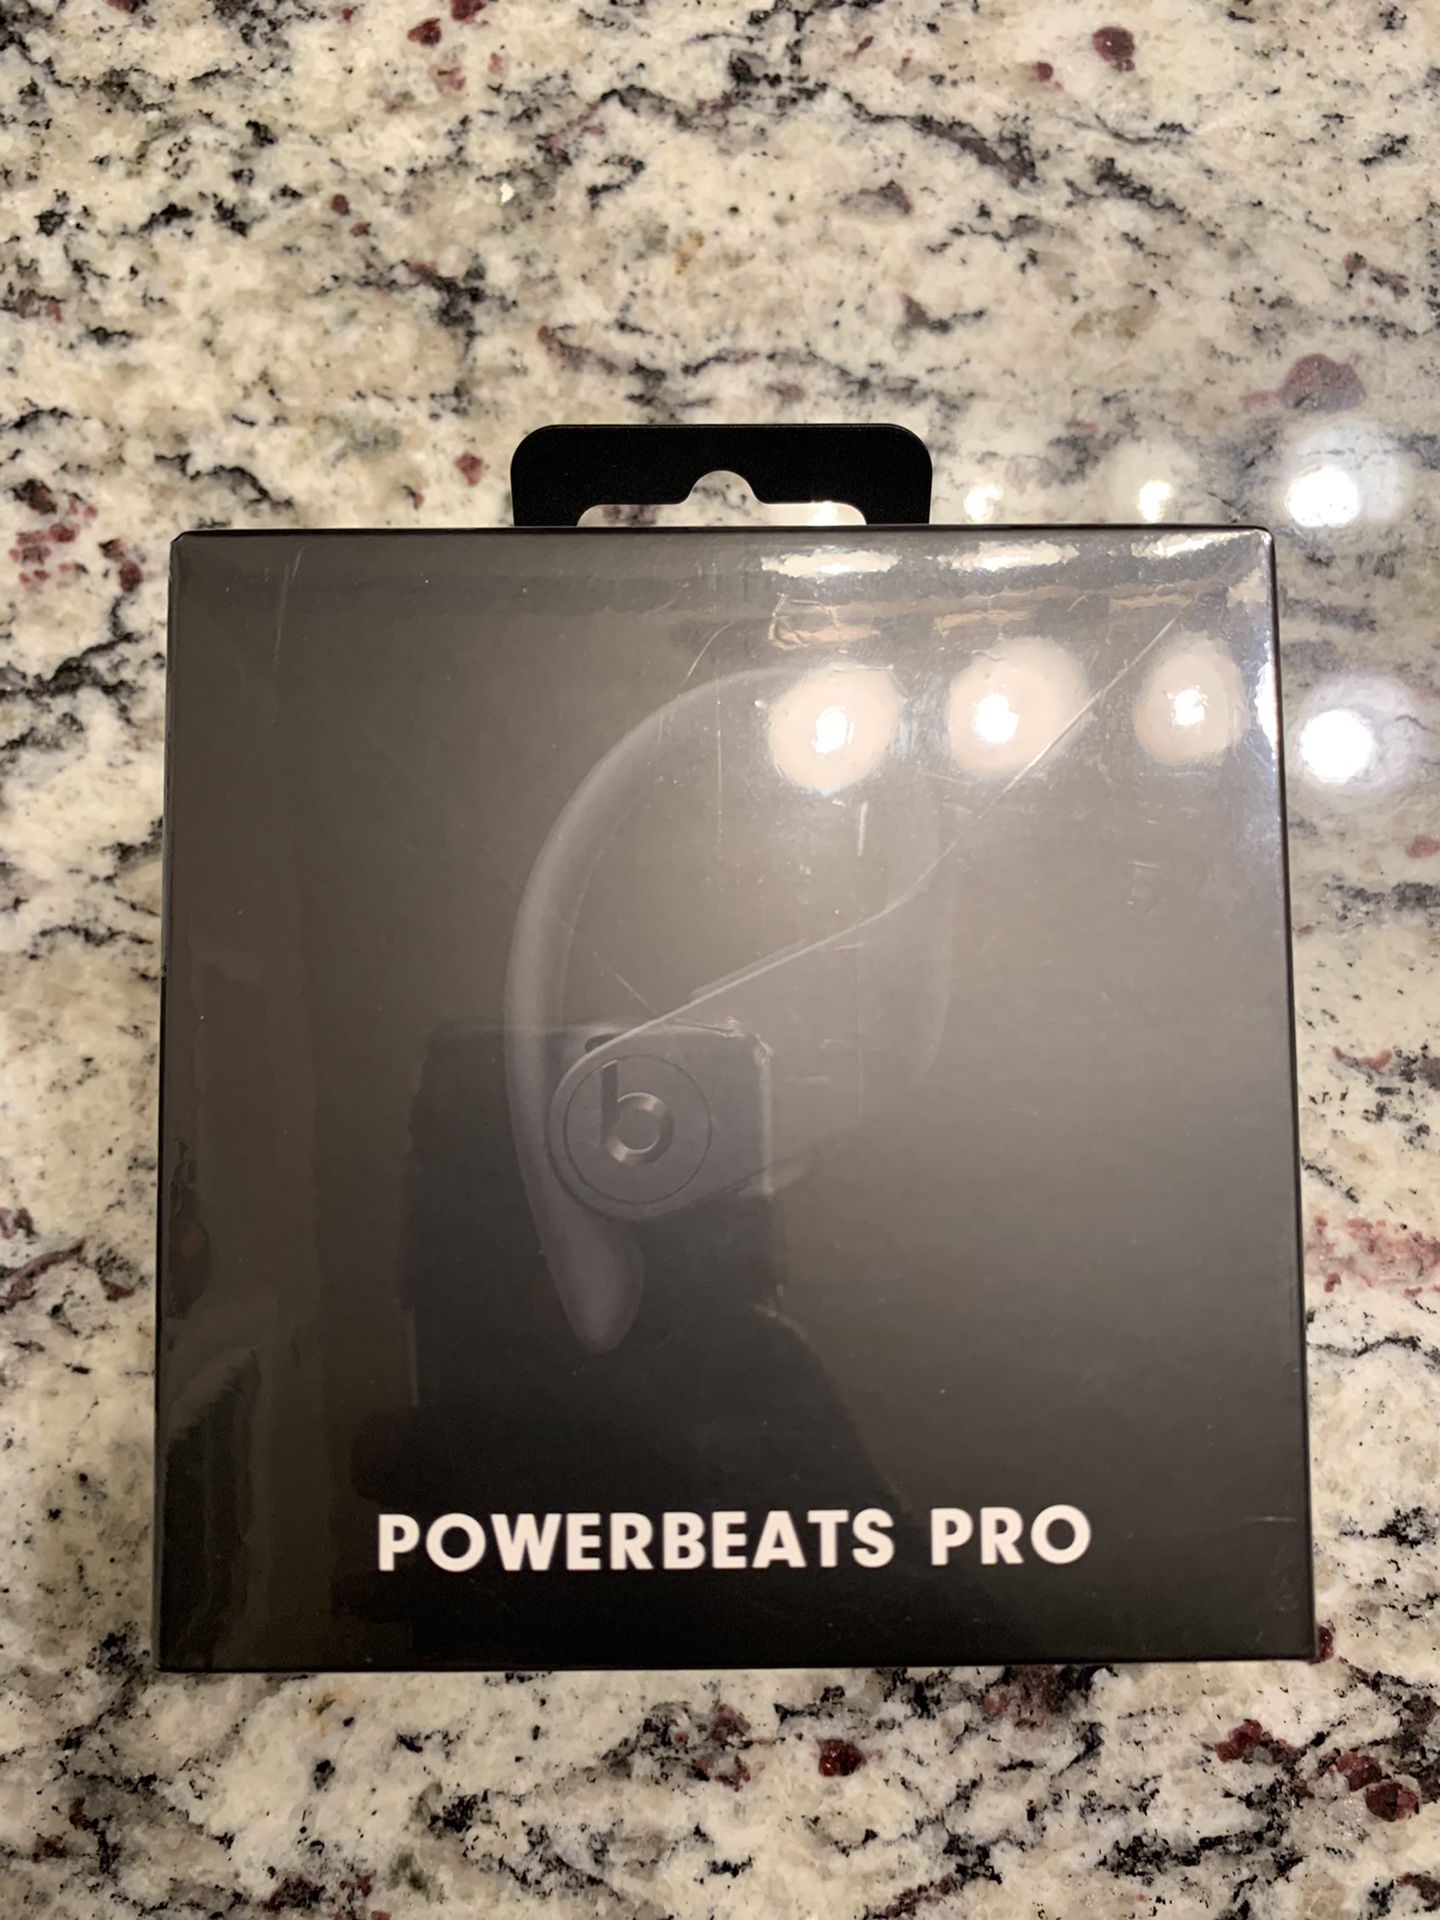 Brand new Still sealed Beats by Dr. Dre Apple Powerbeats Pro Ear-Hook Wireless Headphones Black.